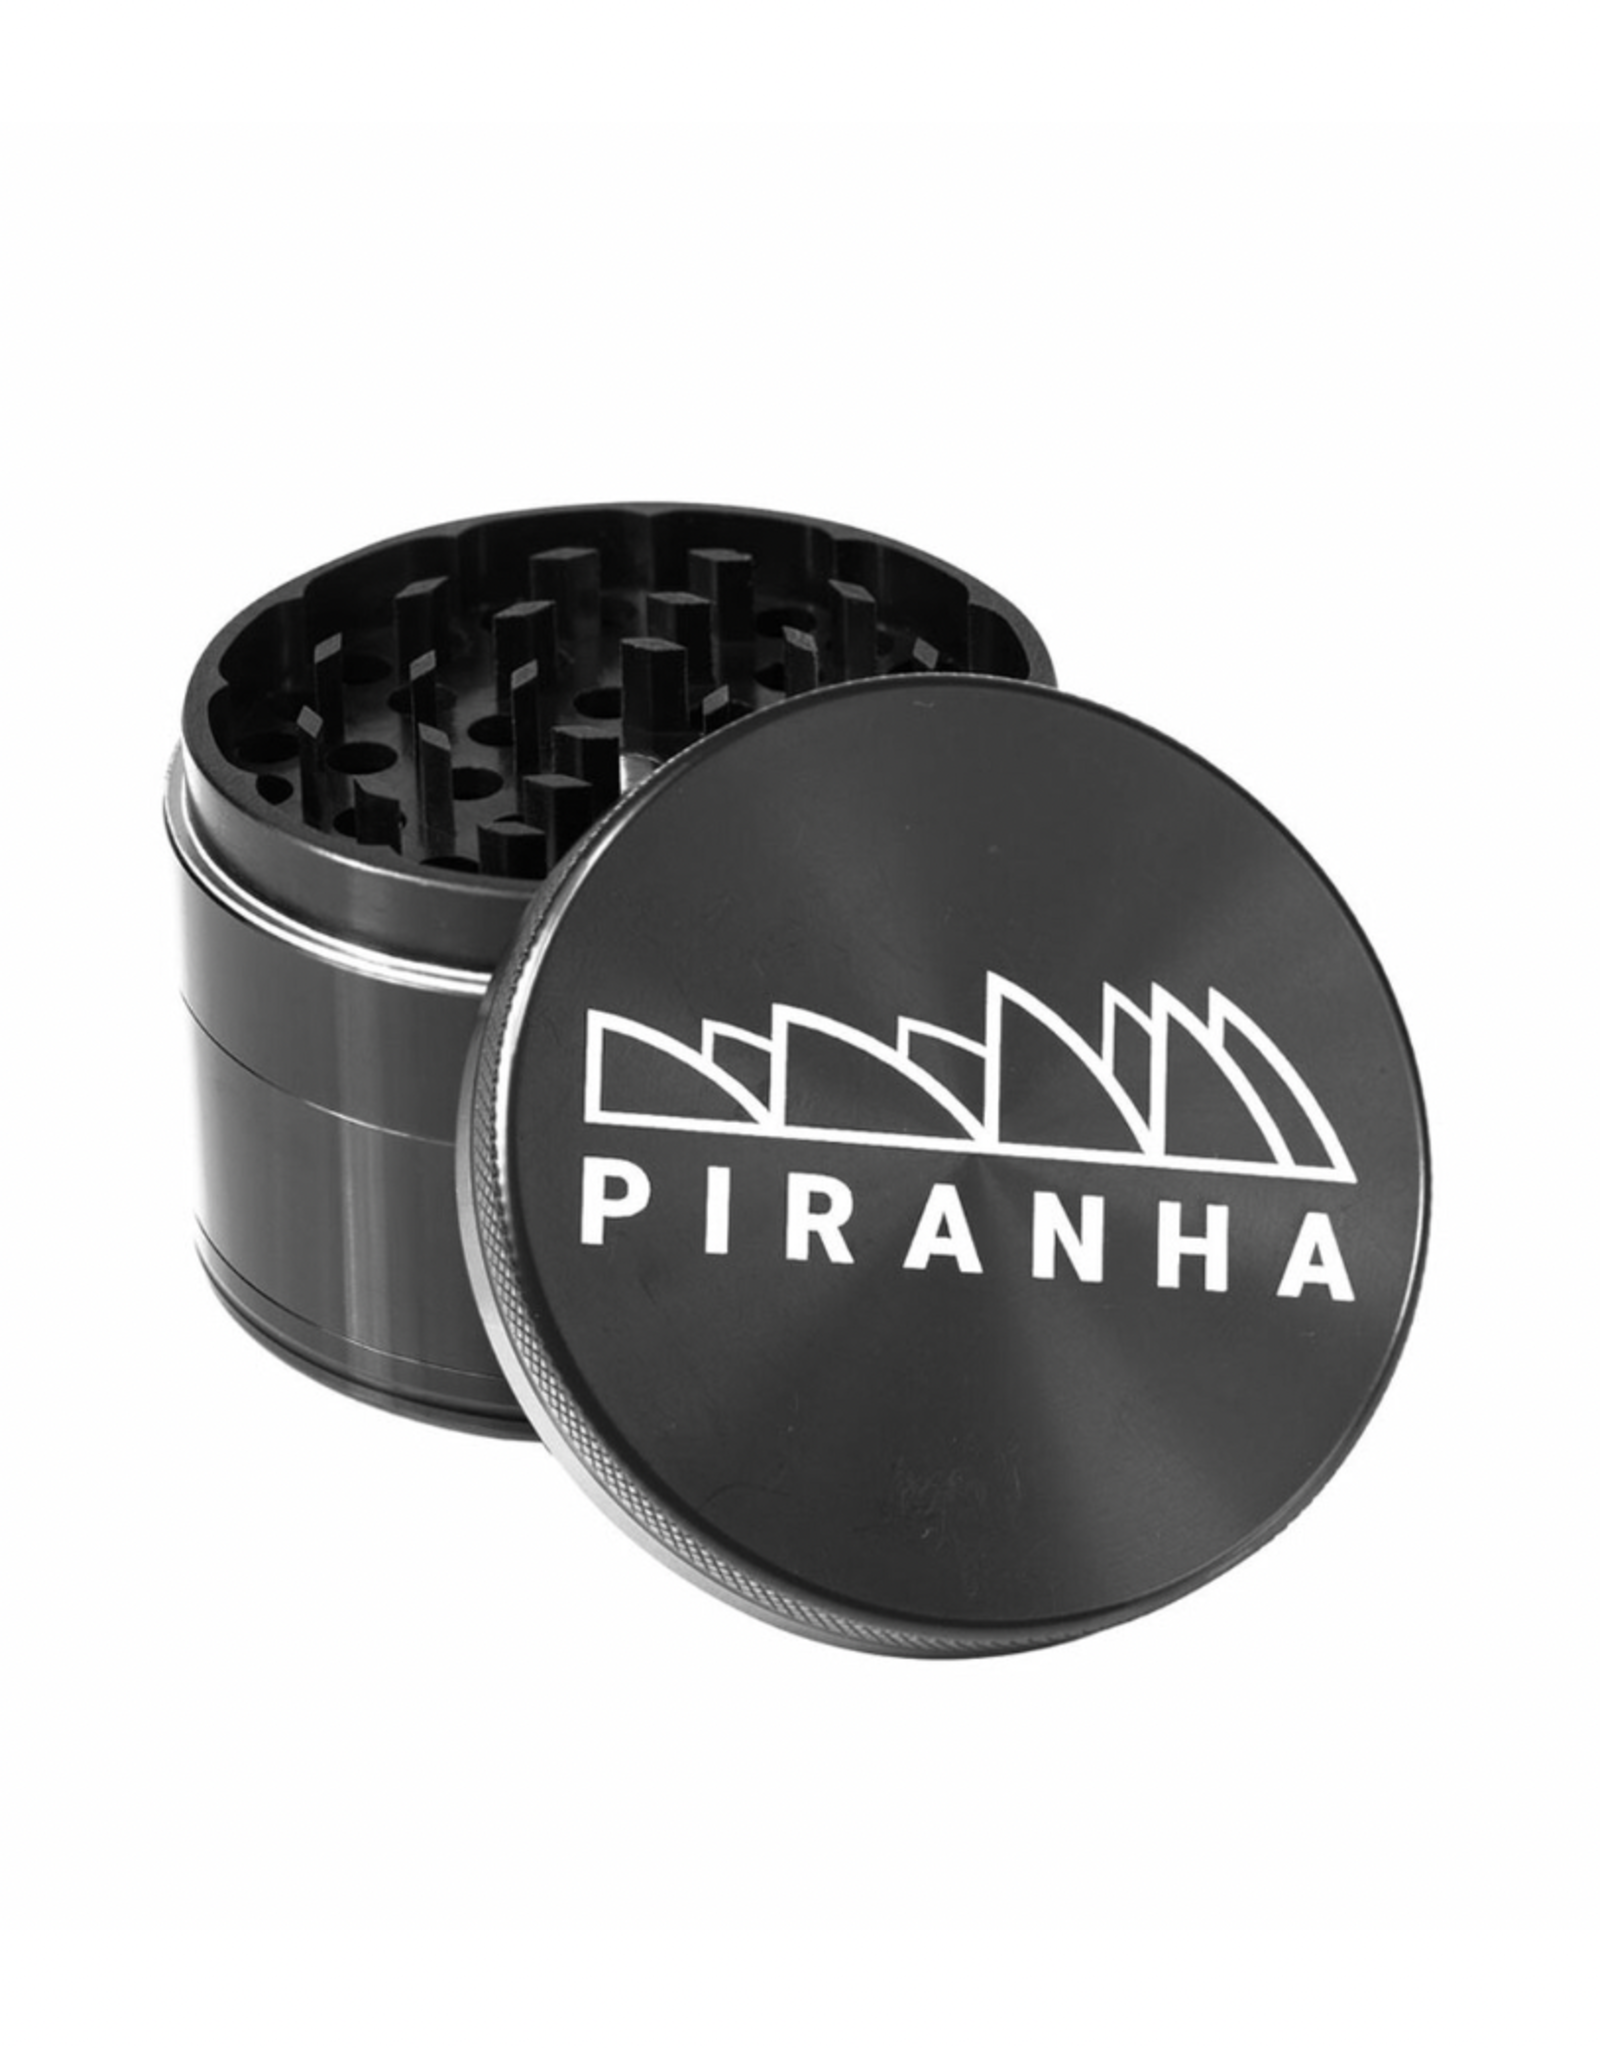 Piranha 2.0" 4 Piece Grinder